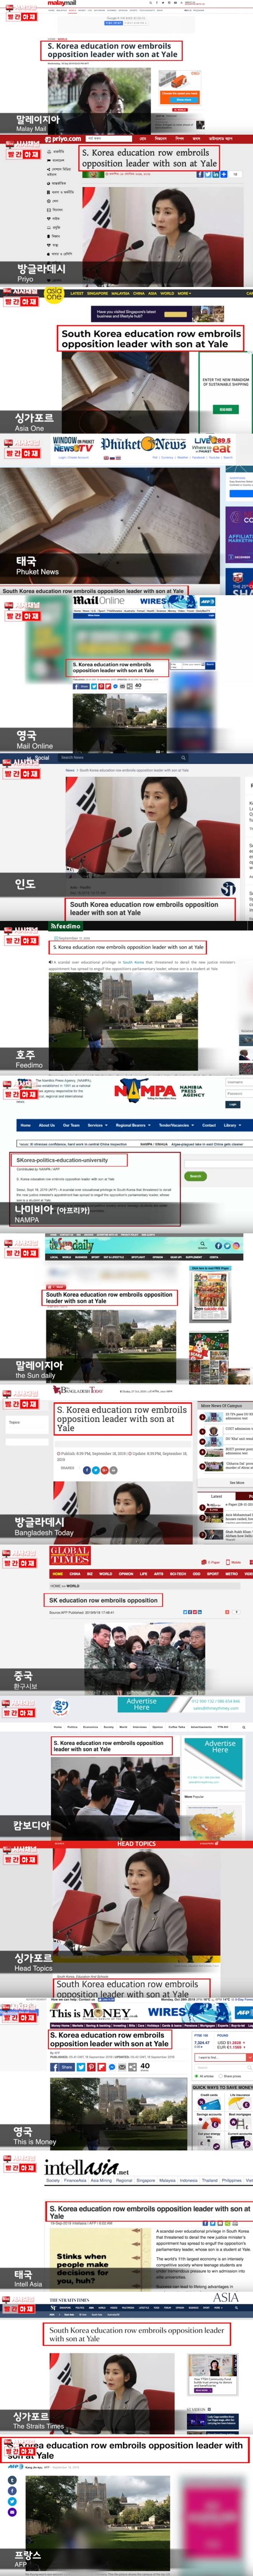 외신들이 보도한 한국뉴스.jpg